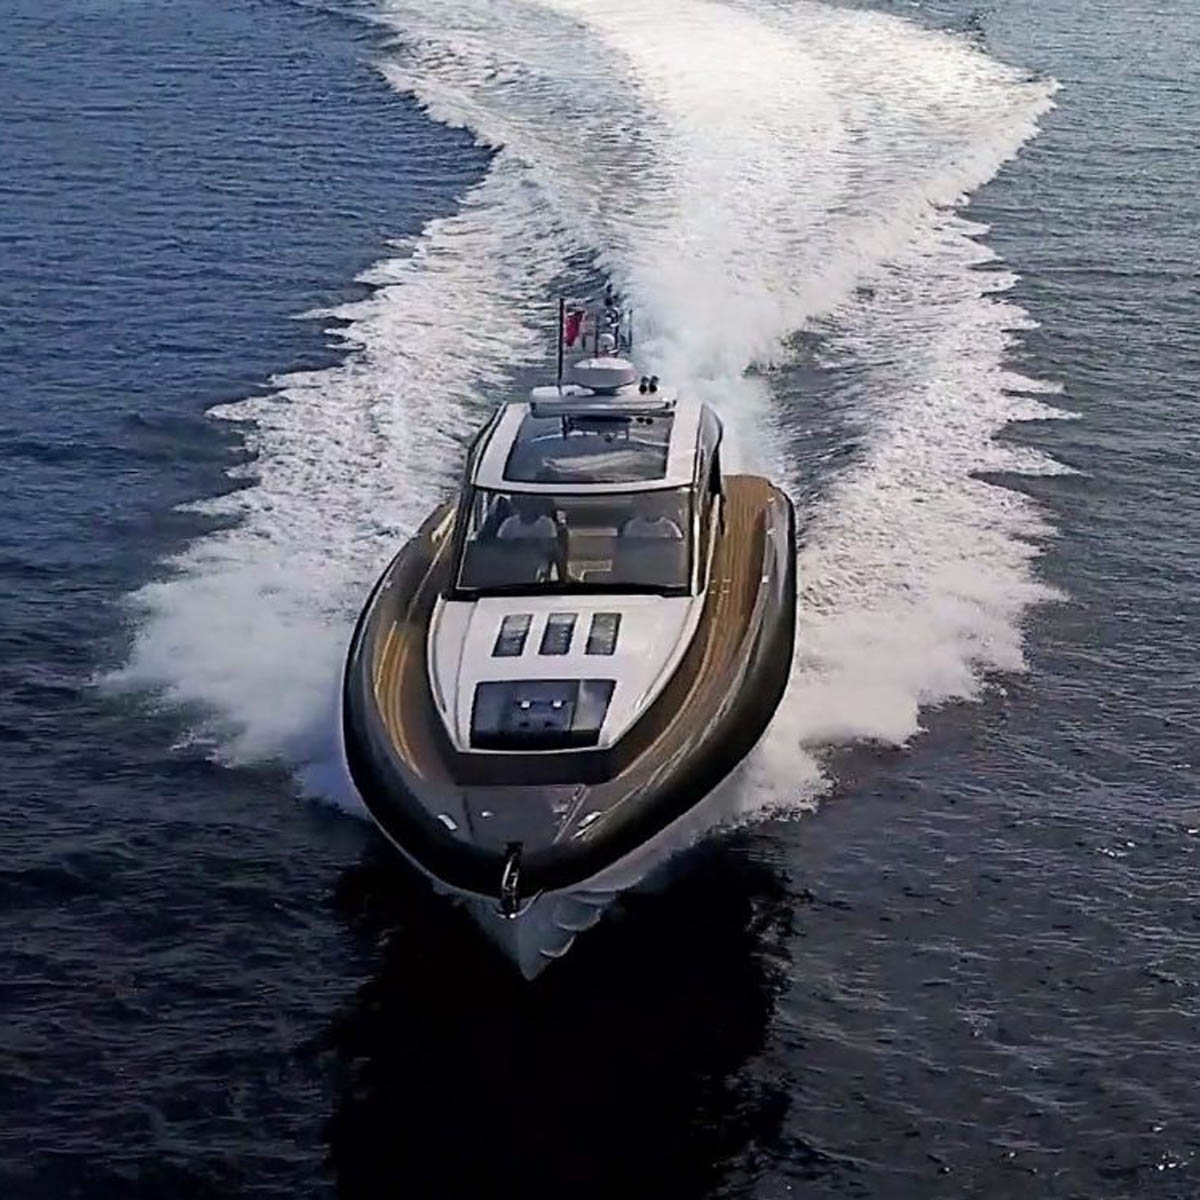 bladerunner 51 powerboat